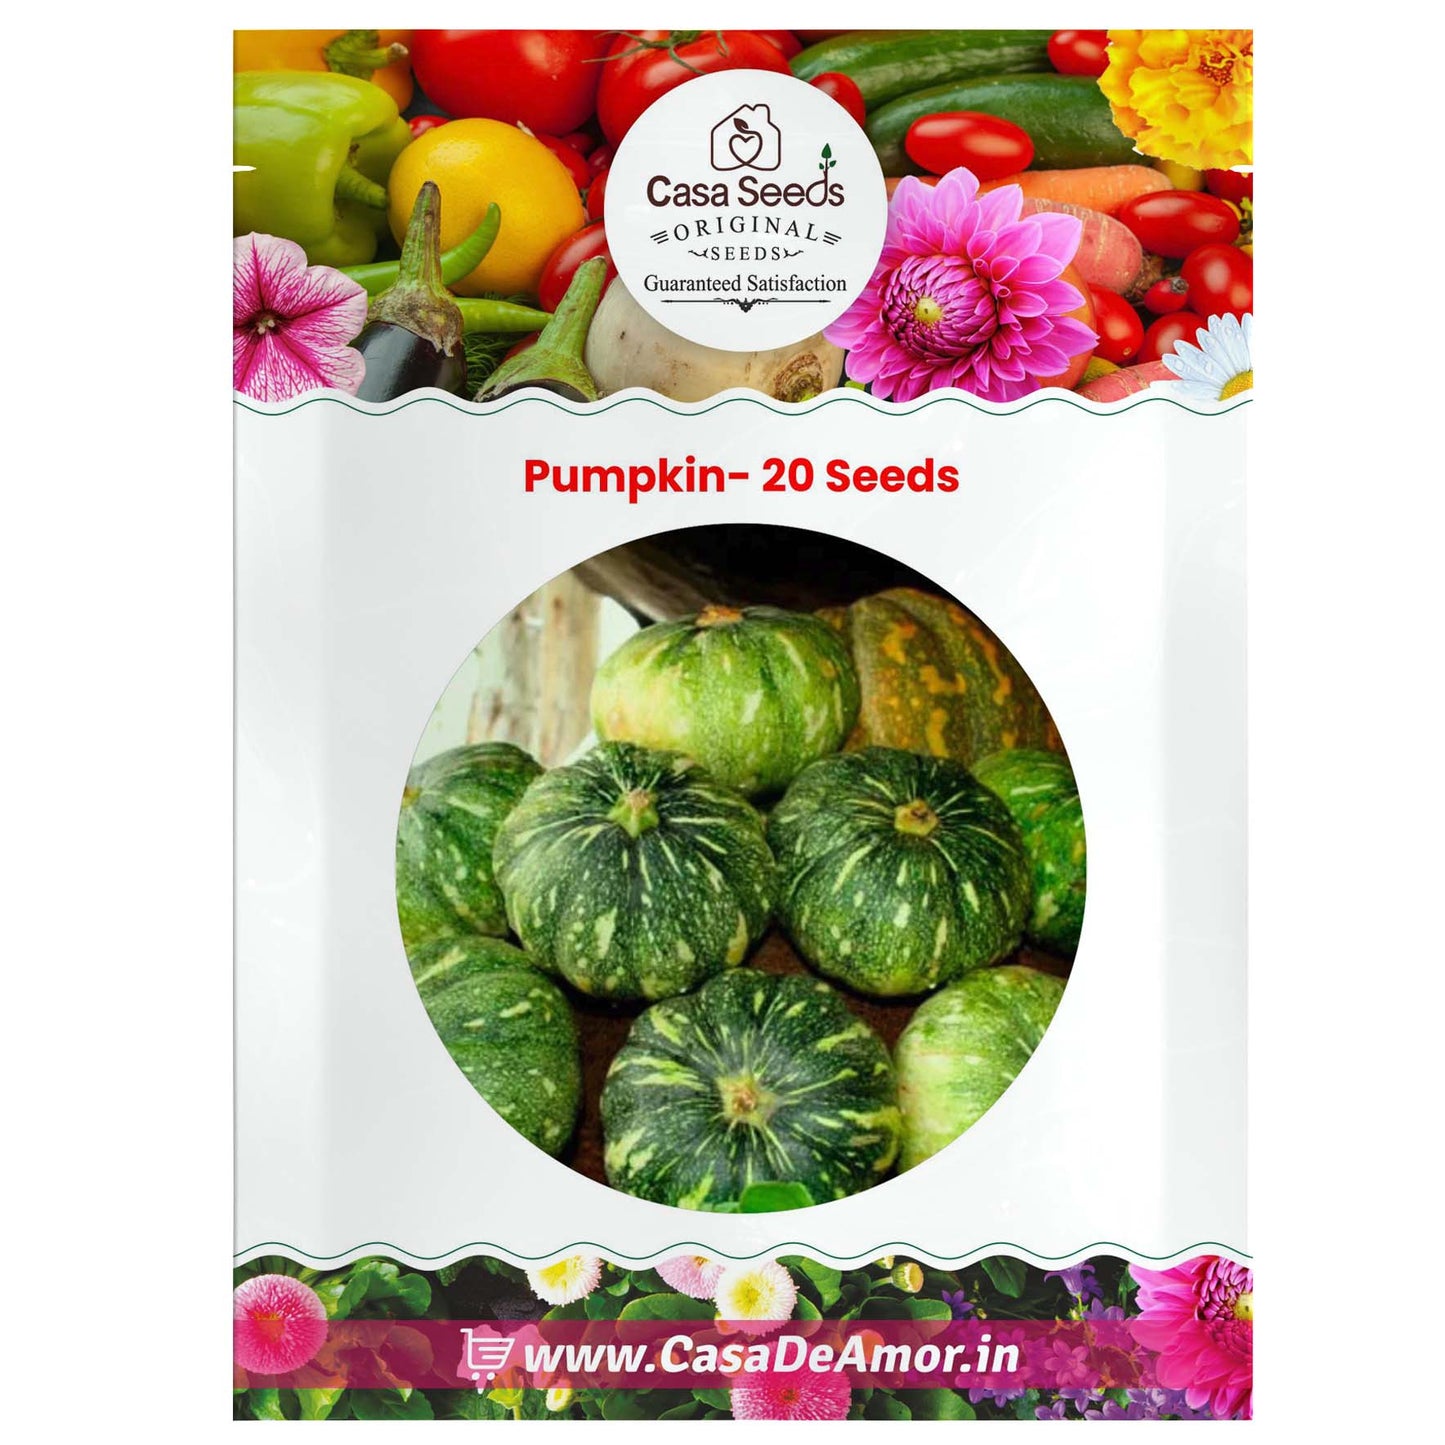 Pumpkin- 20 Seeds